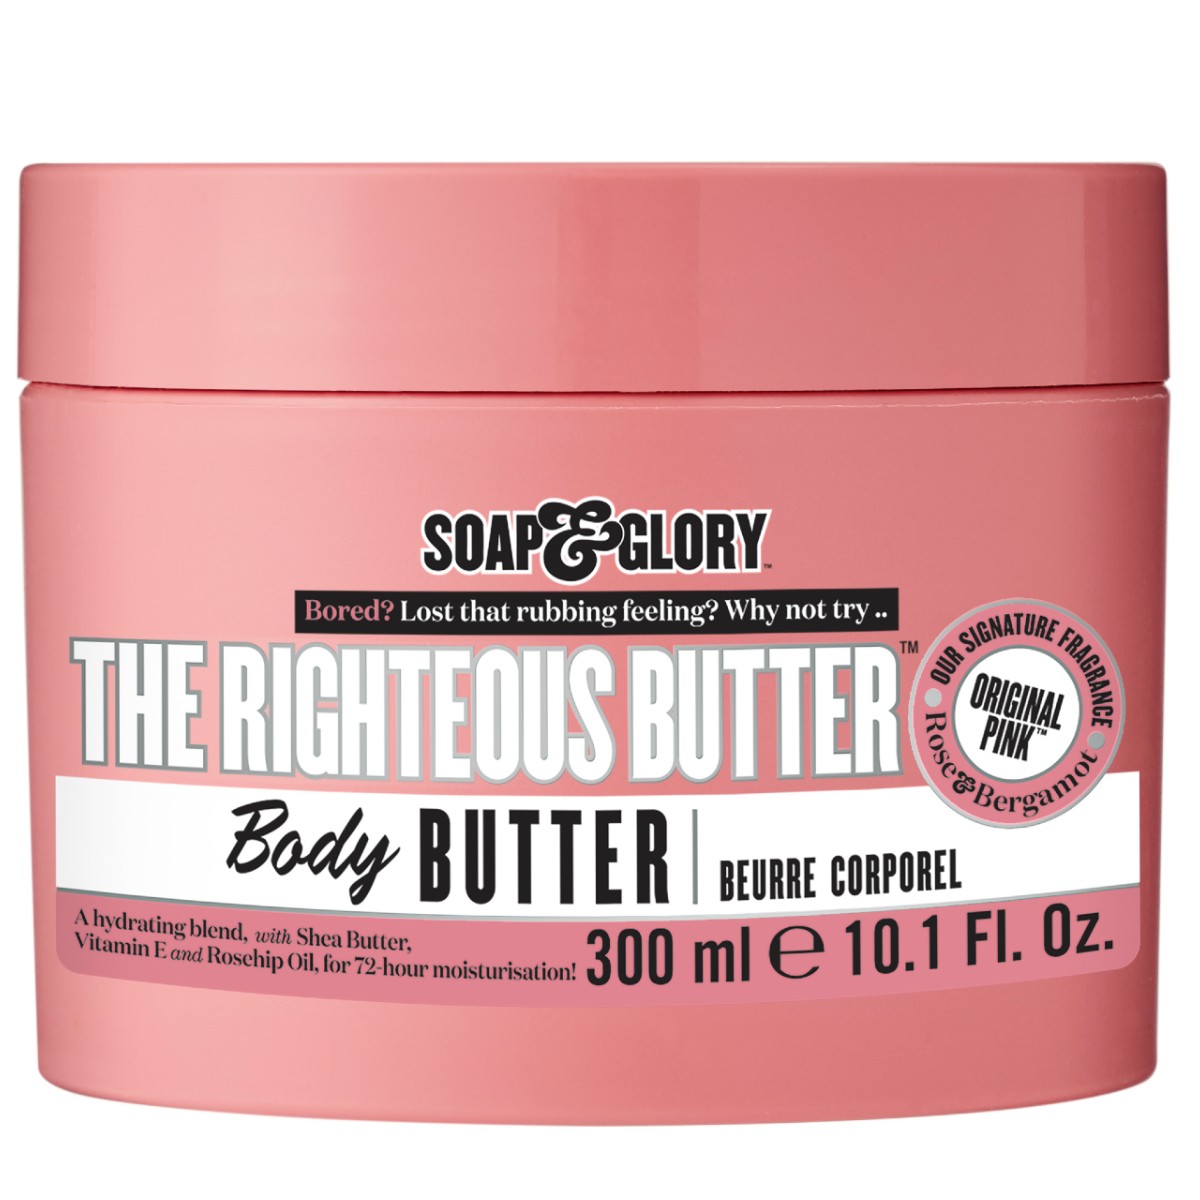 Original Pink The Righteous Butter Moisturising Body Butter